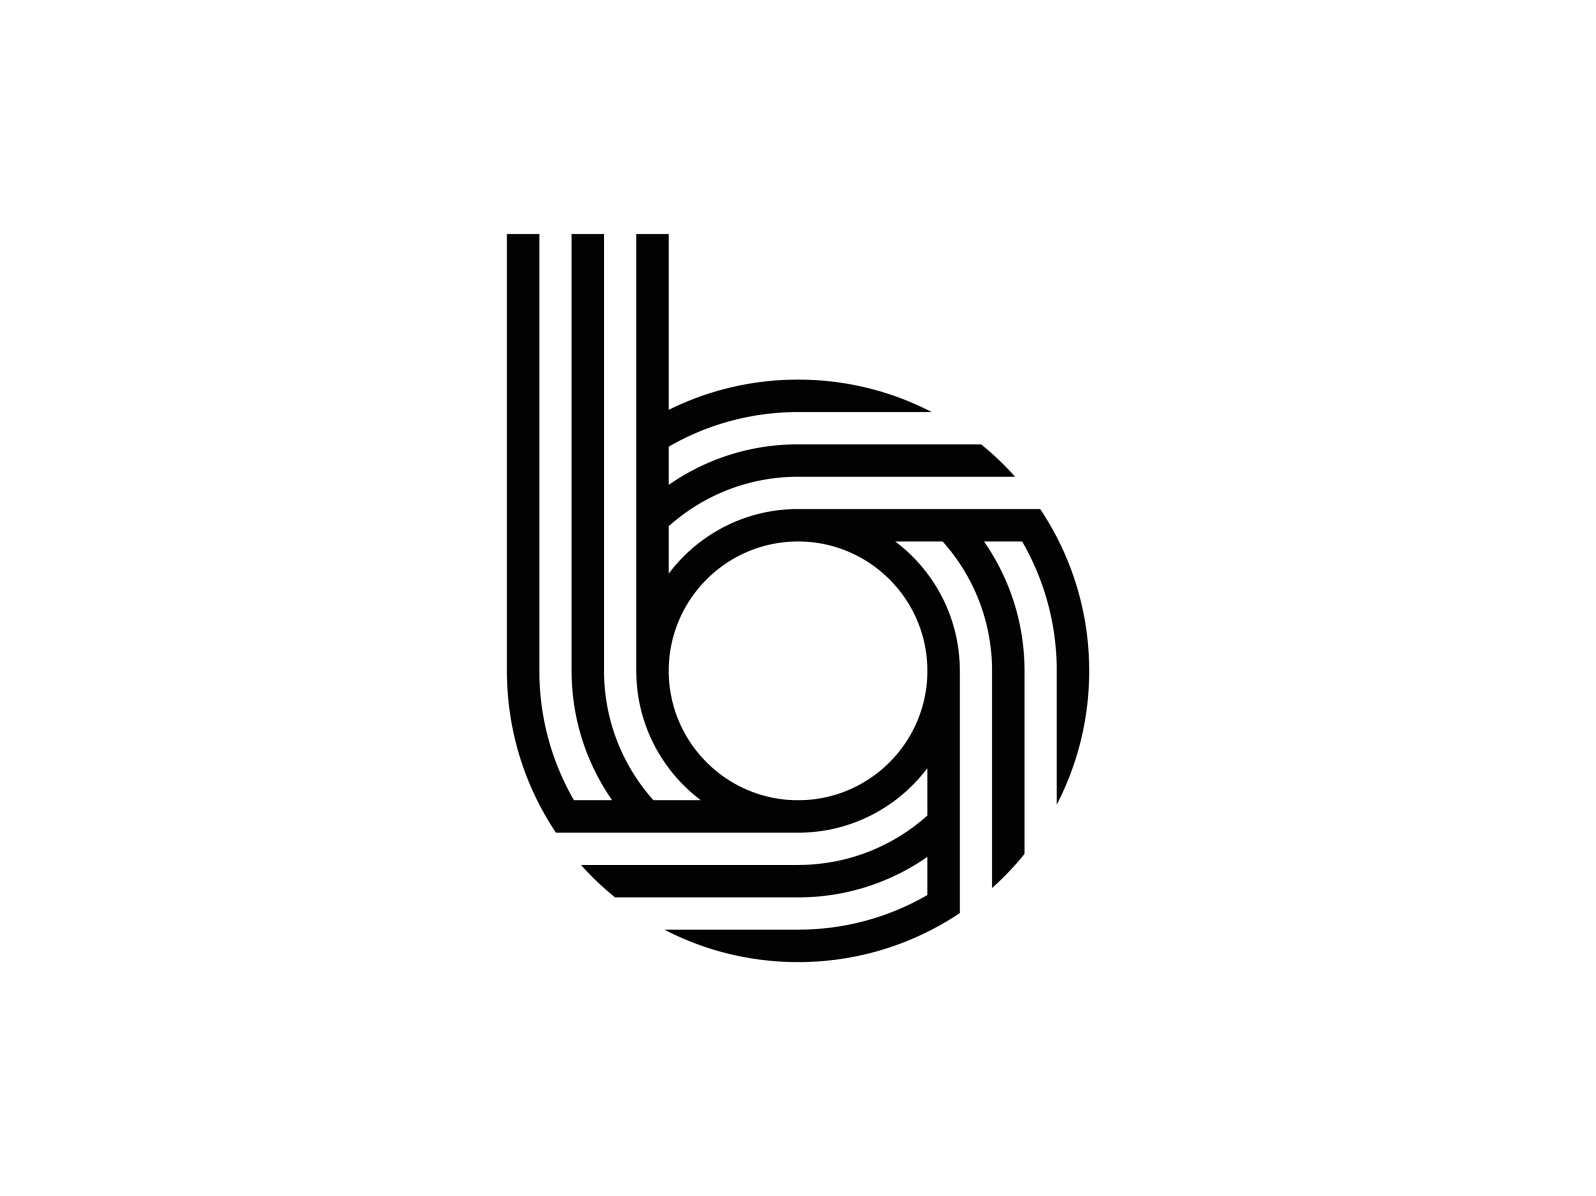 B logo by Ramazan Toprak on Dribbble